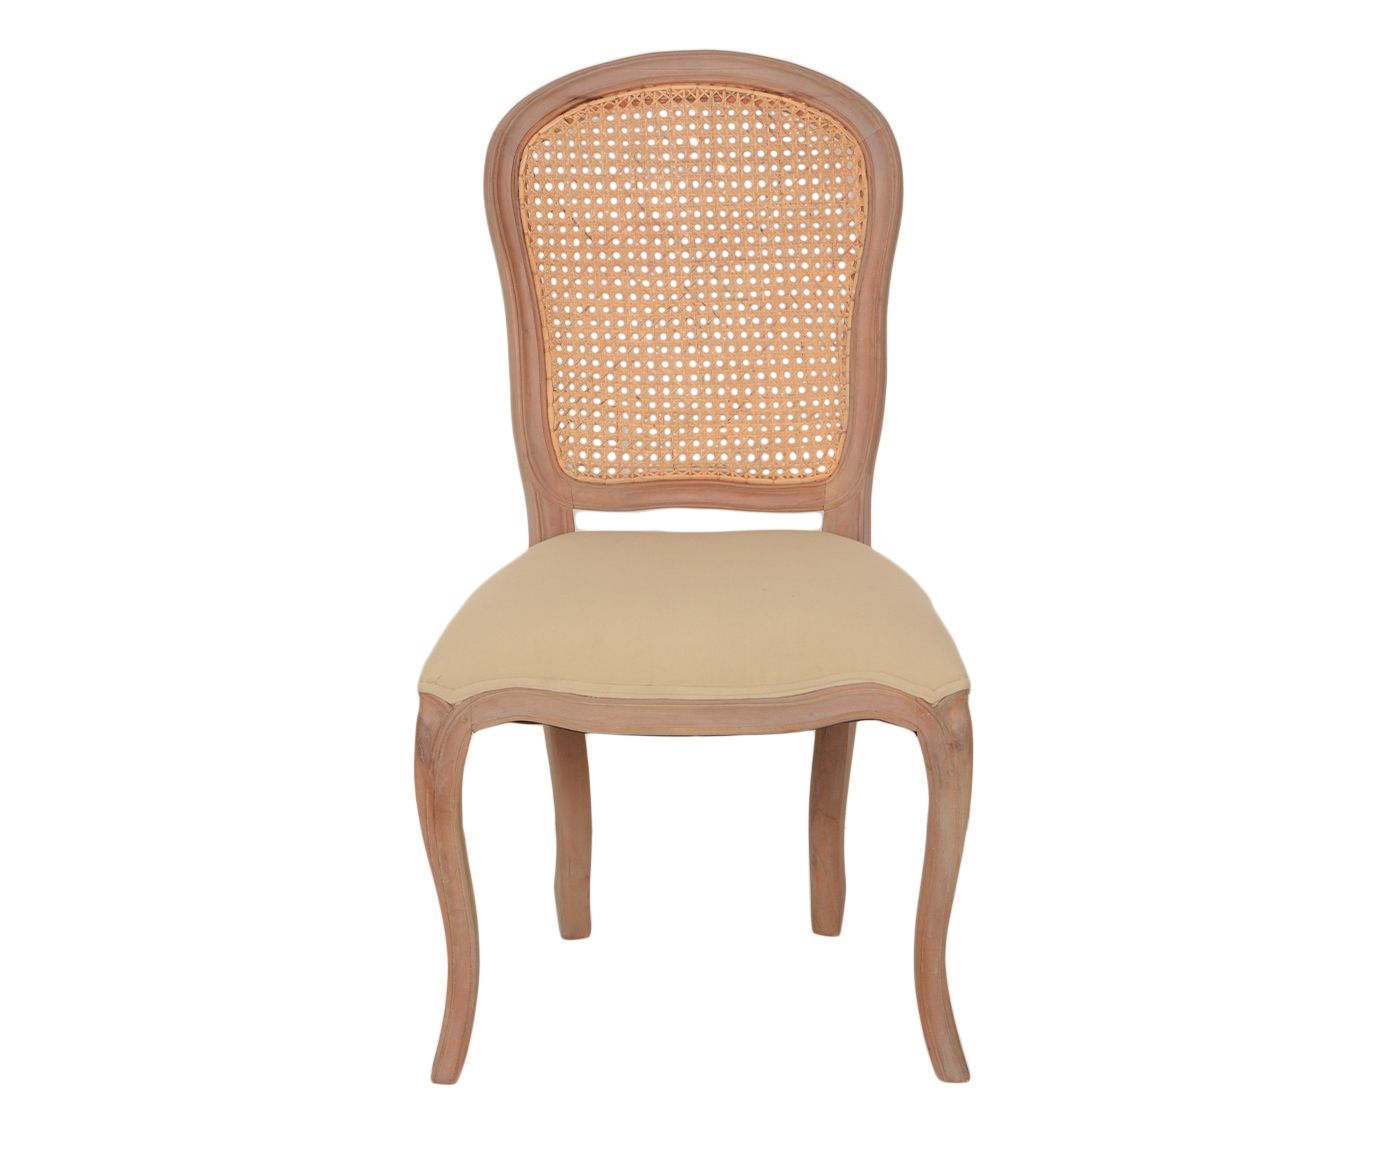 Cadeira Palha Marzia Classic | Westwing.com.br